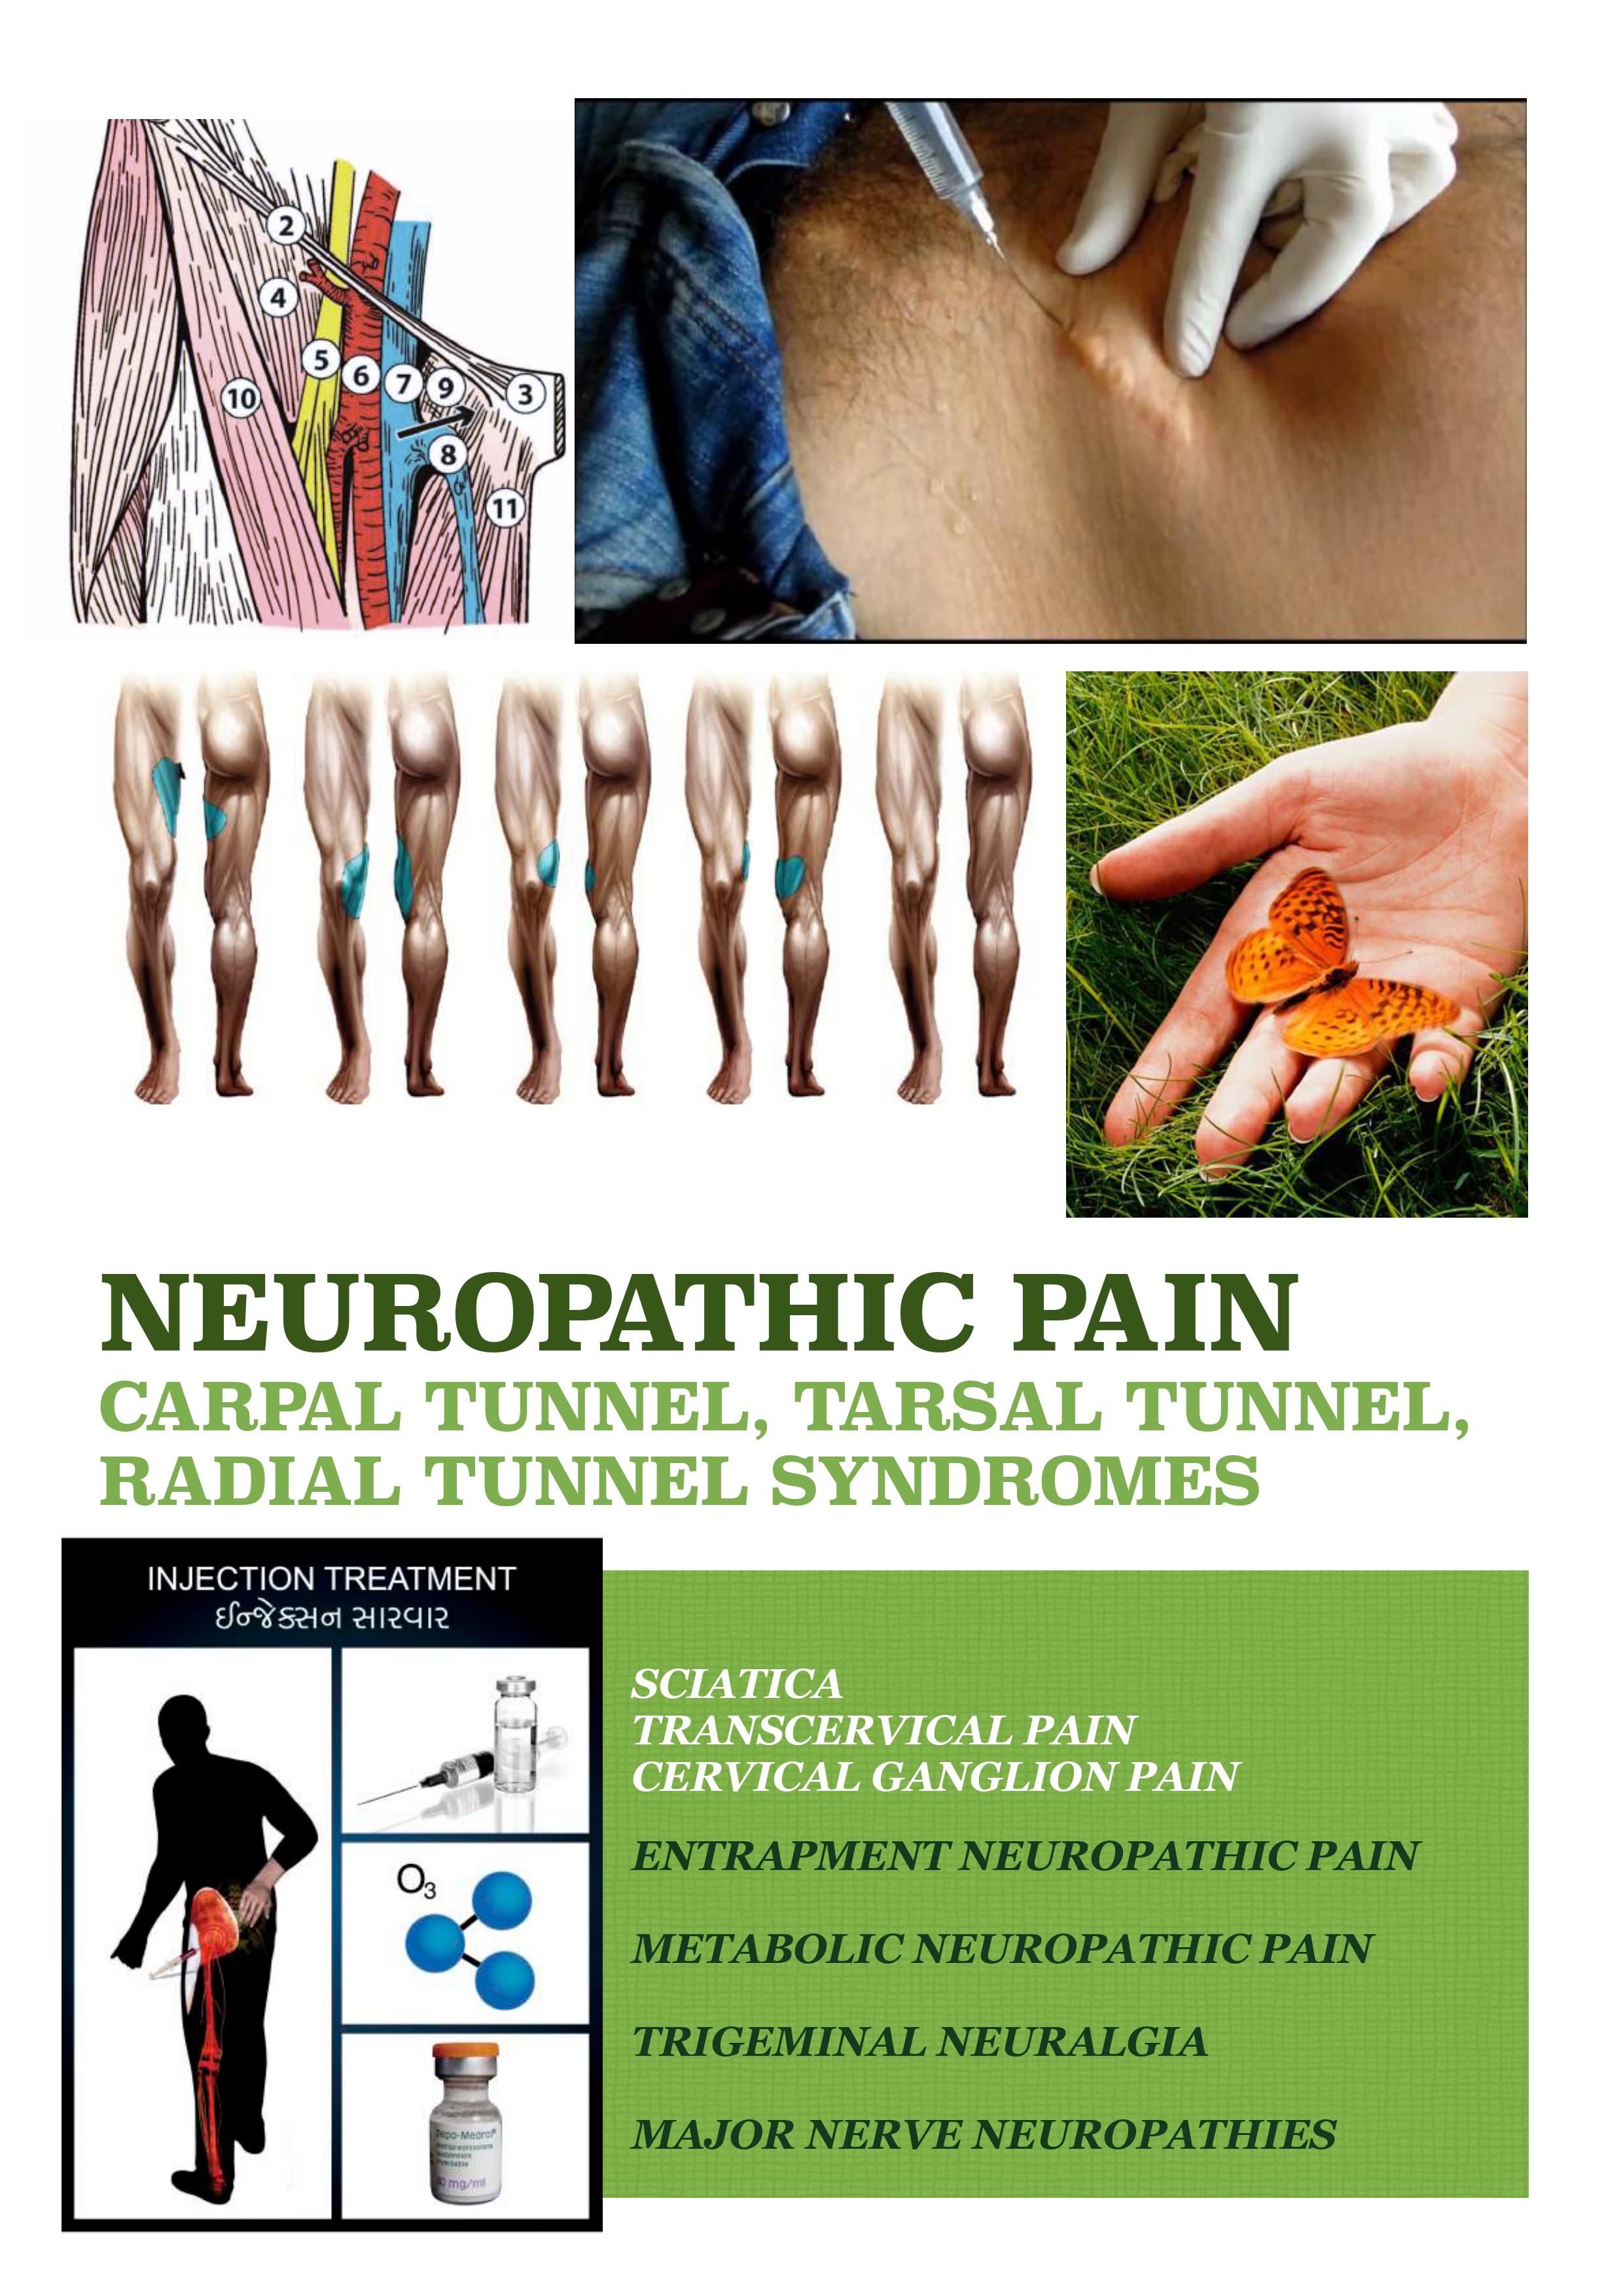 neuropathic pain